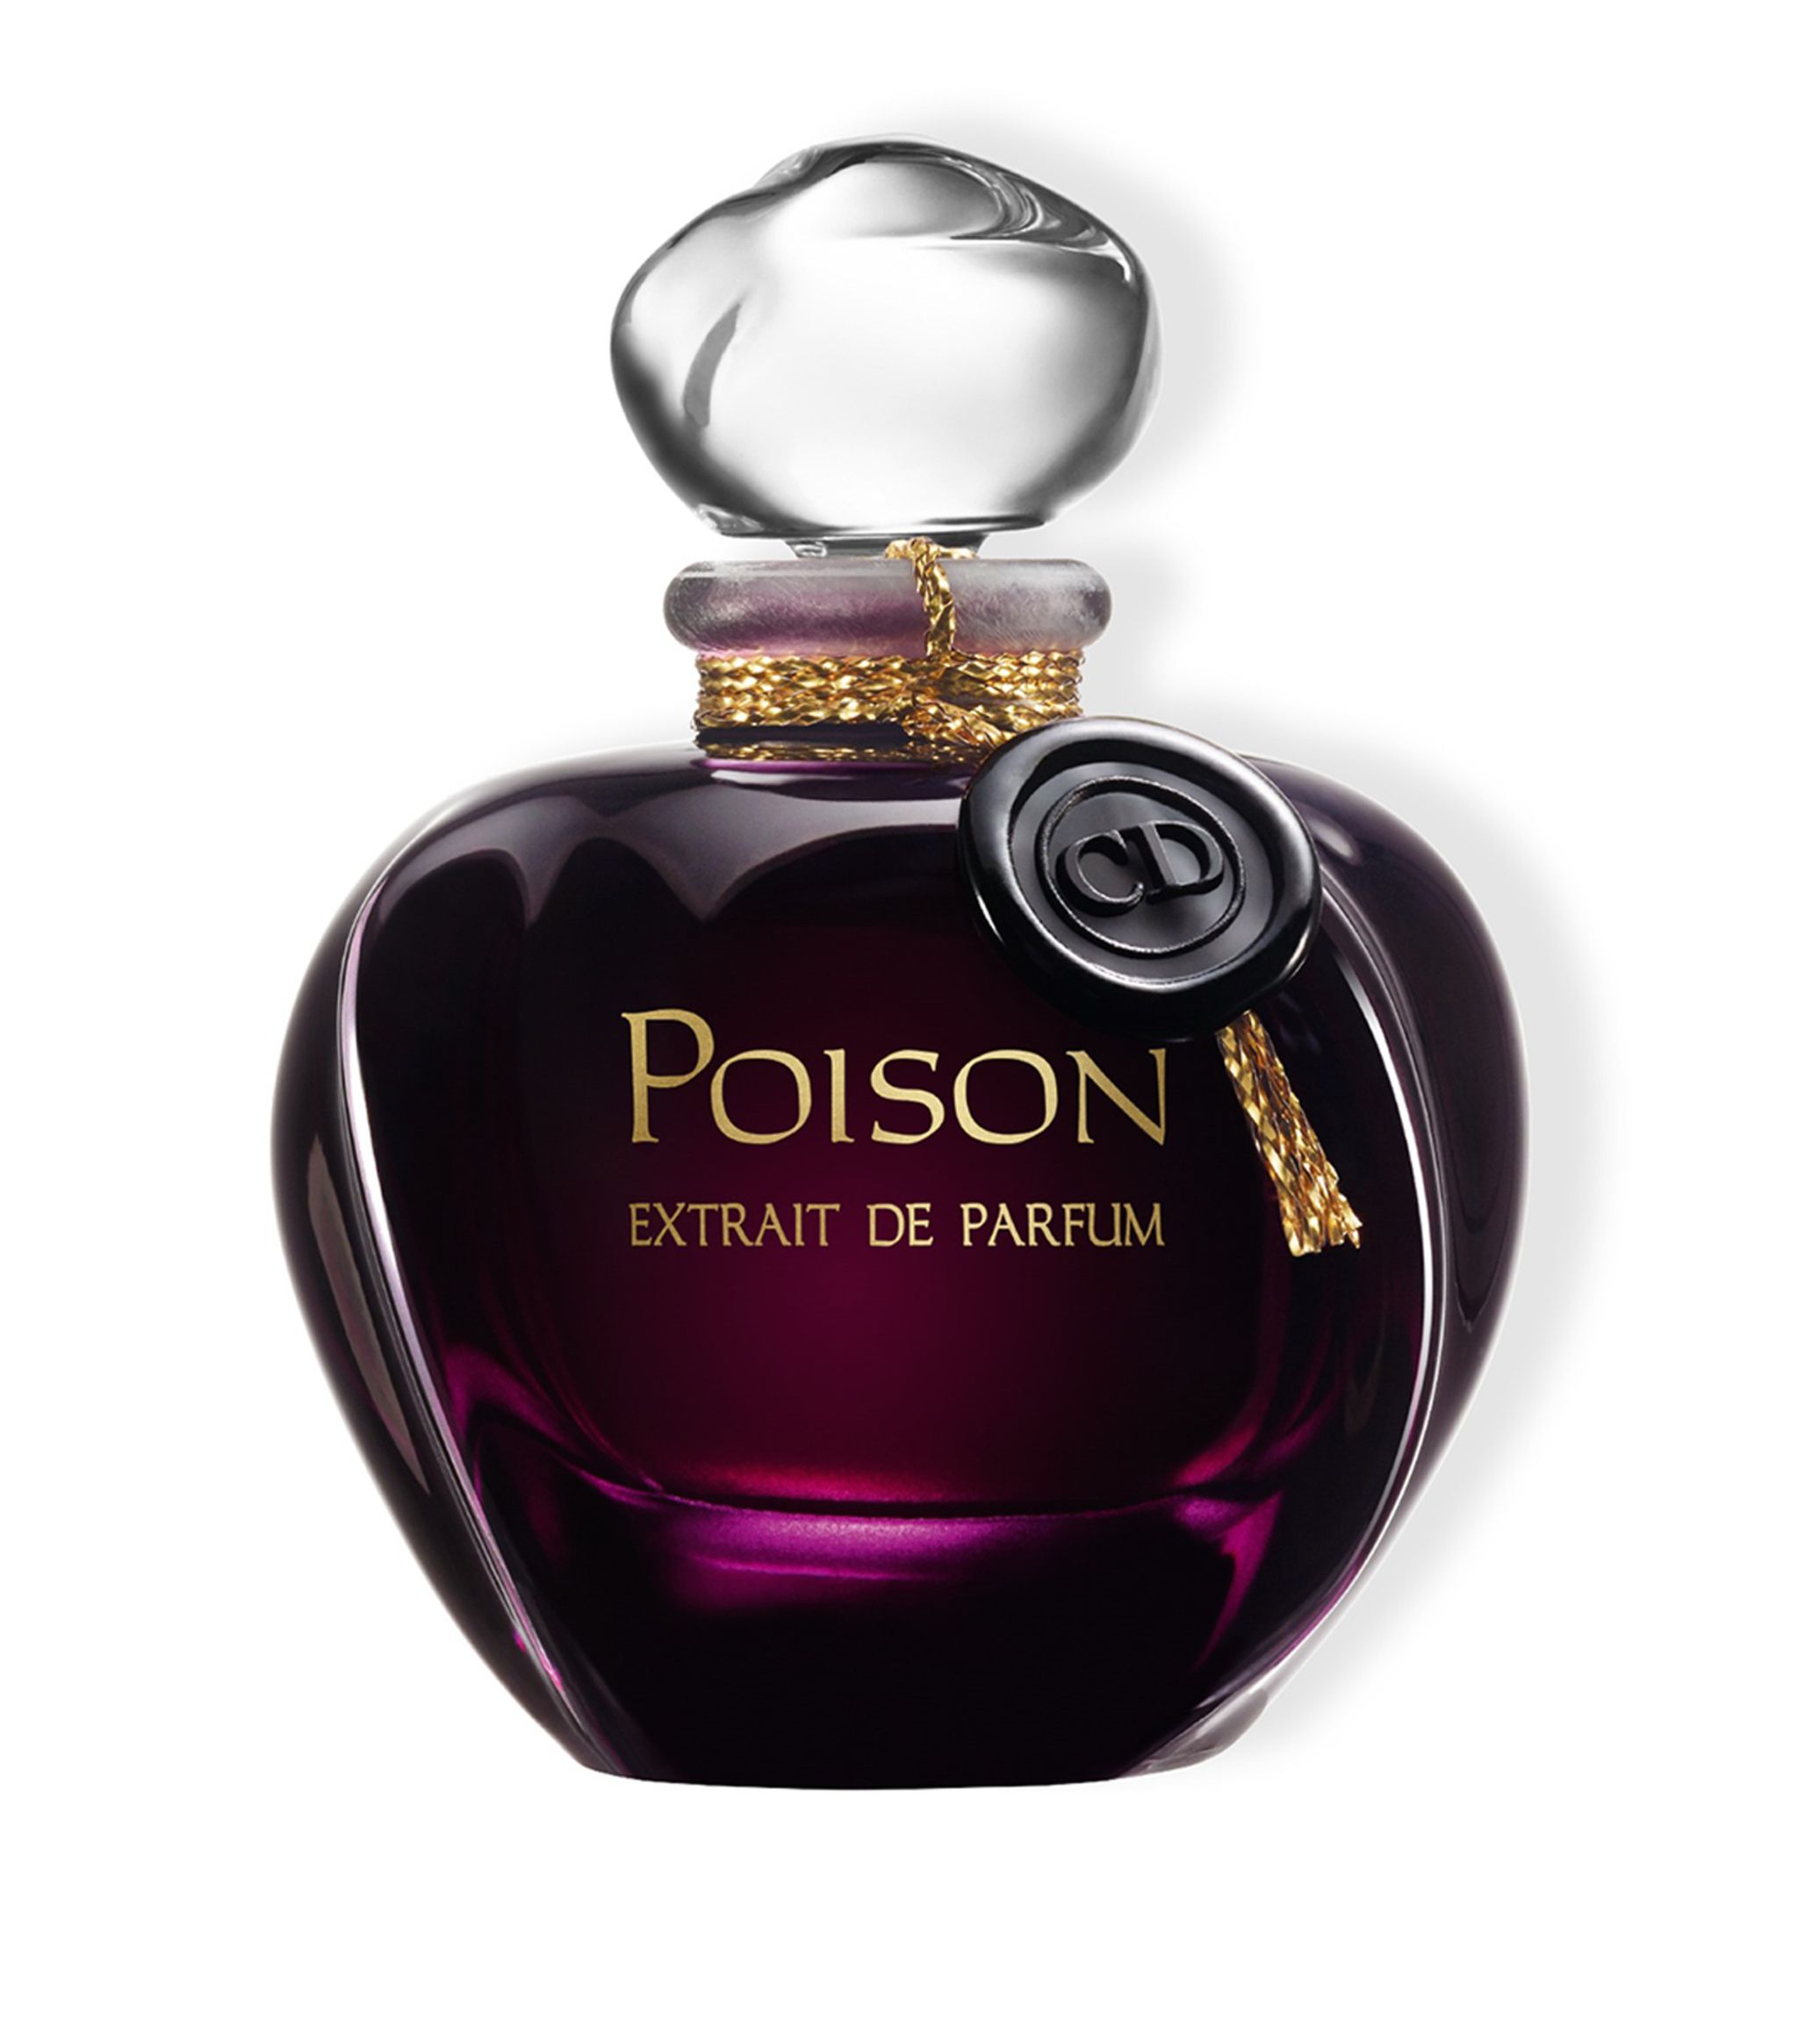 Poison Extrait de Parfum Christian Dior perfume